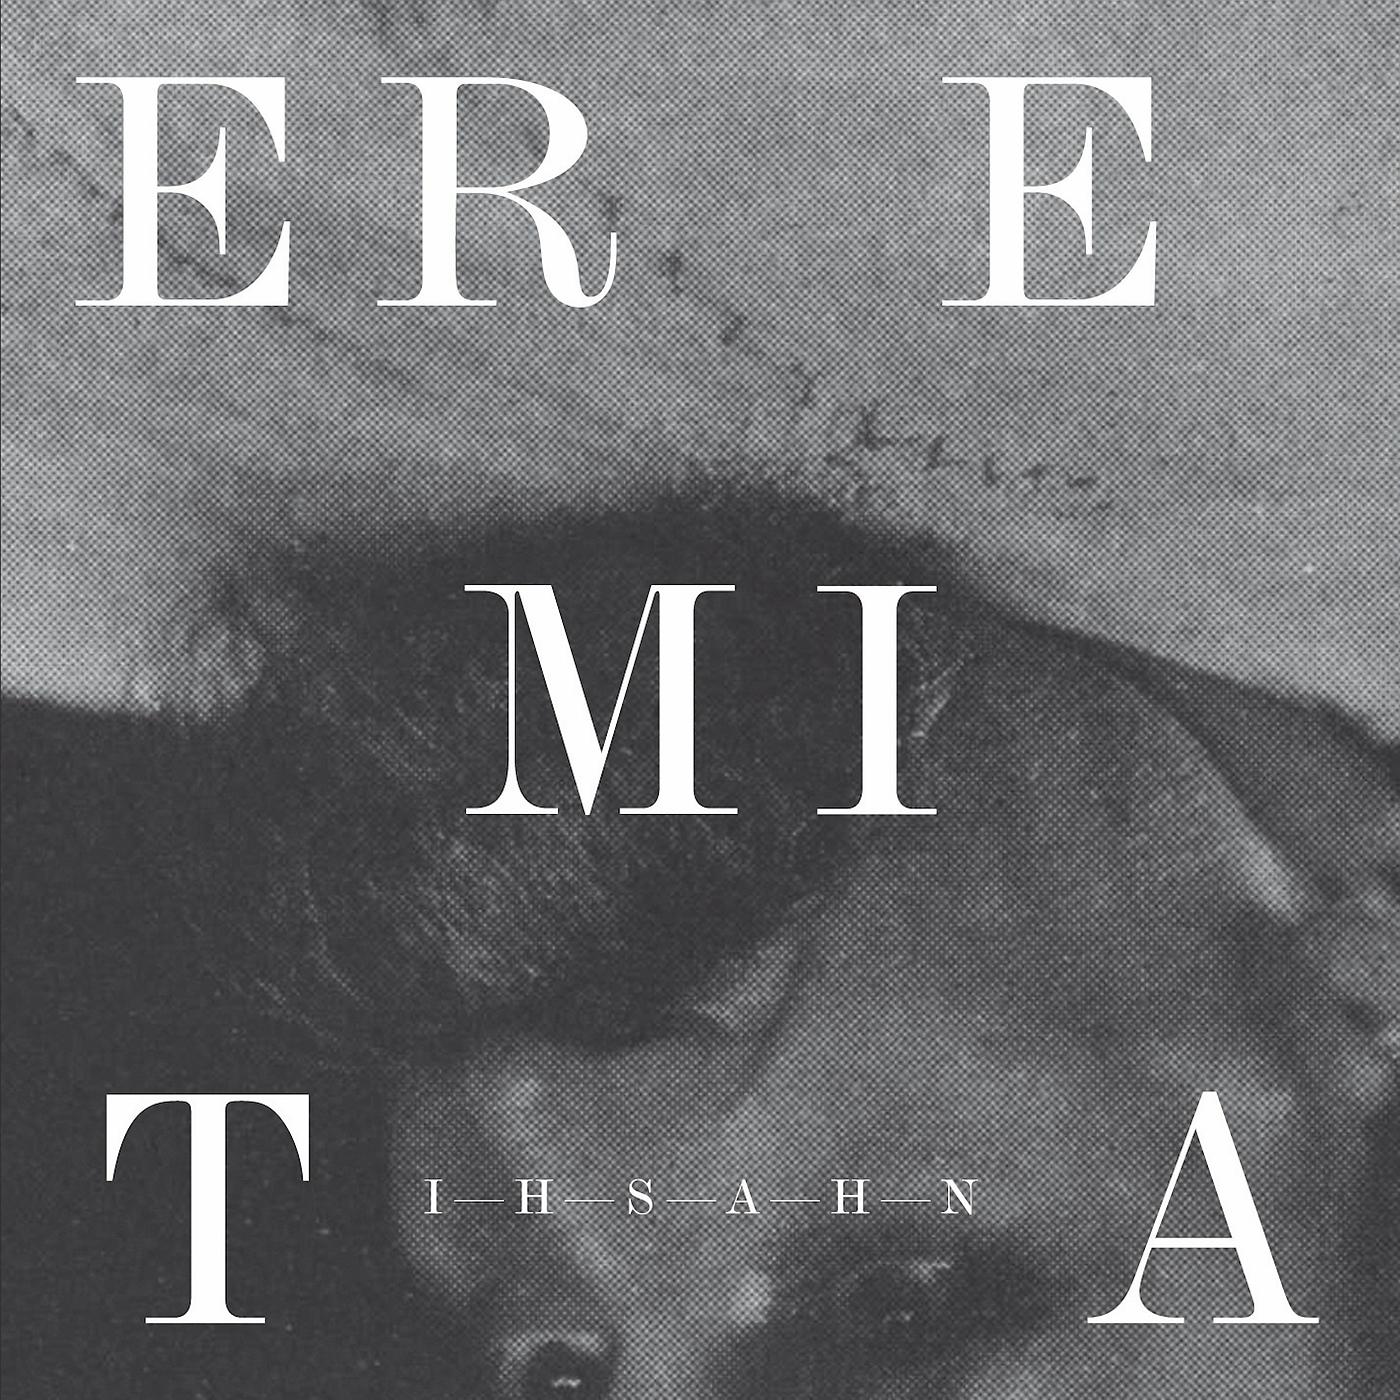 Постер альбома Eremita